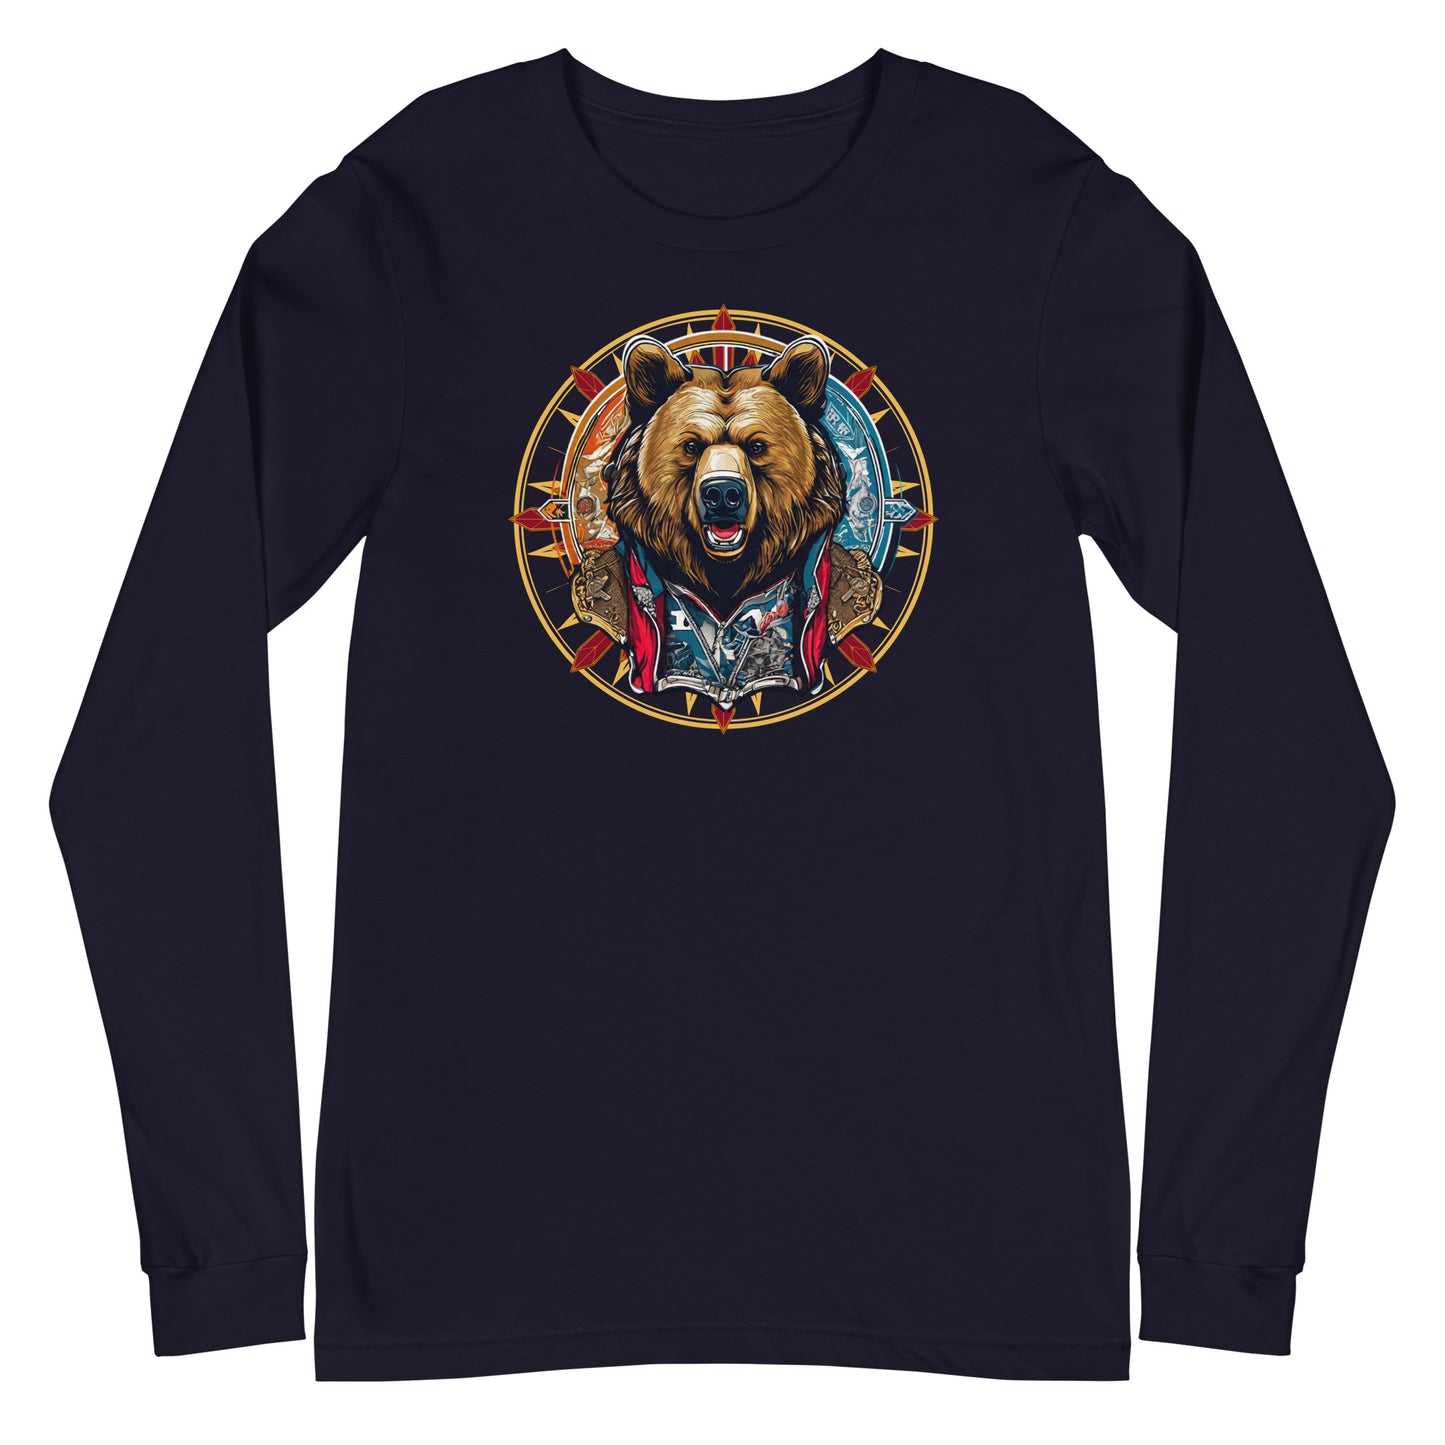 Bear Emblem Long Sleeve Tee Navy